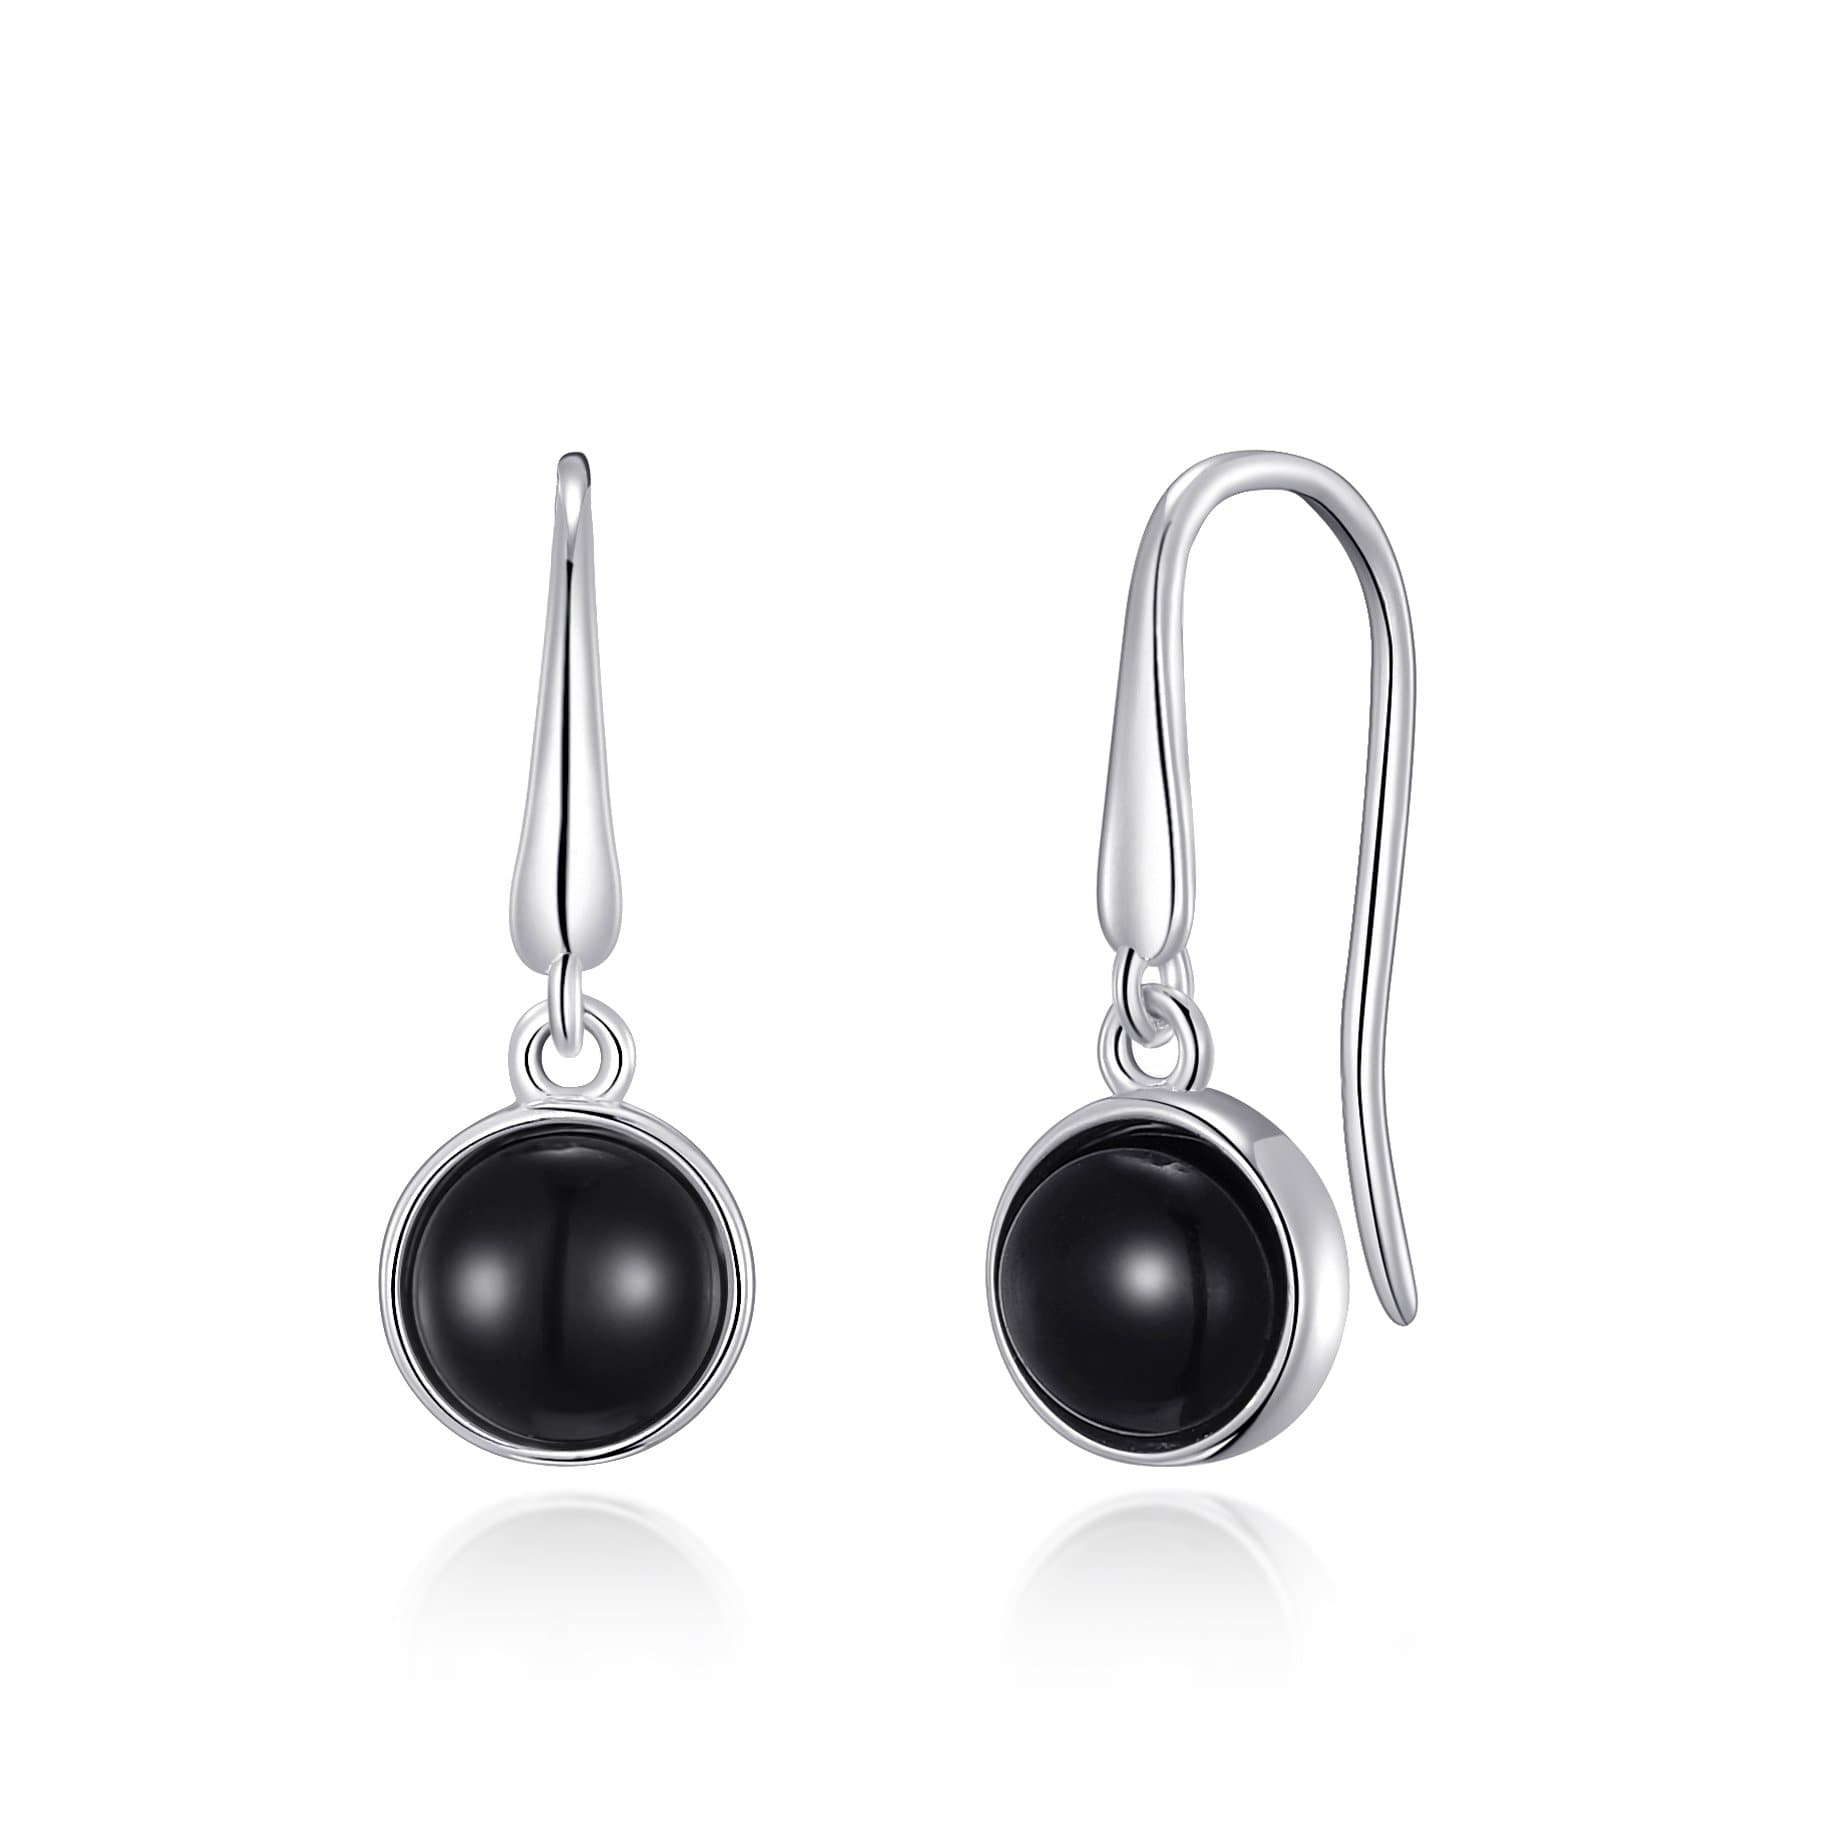 Black Onyx Drop Earrings by Philip Jones Jewellery